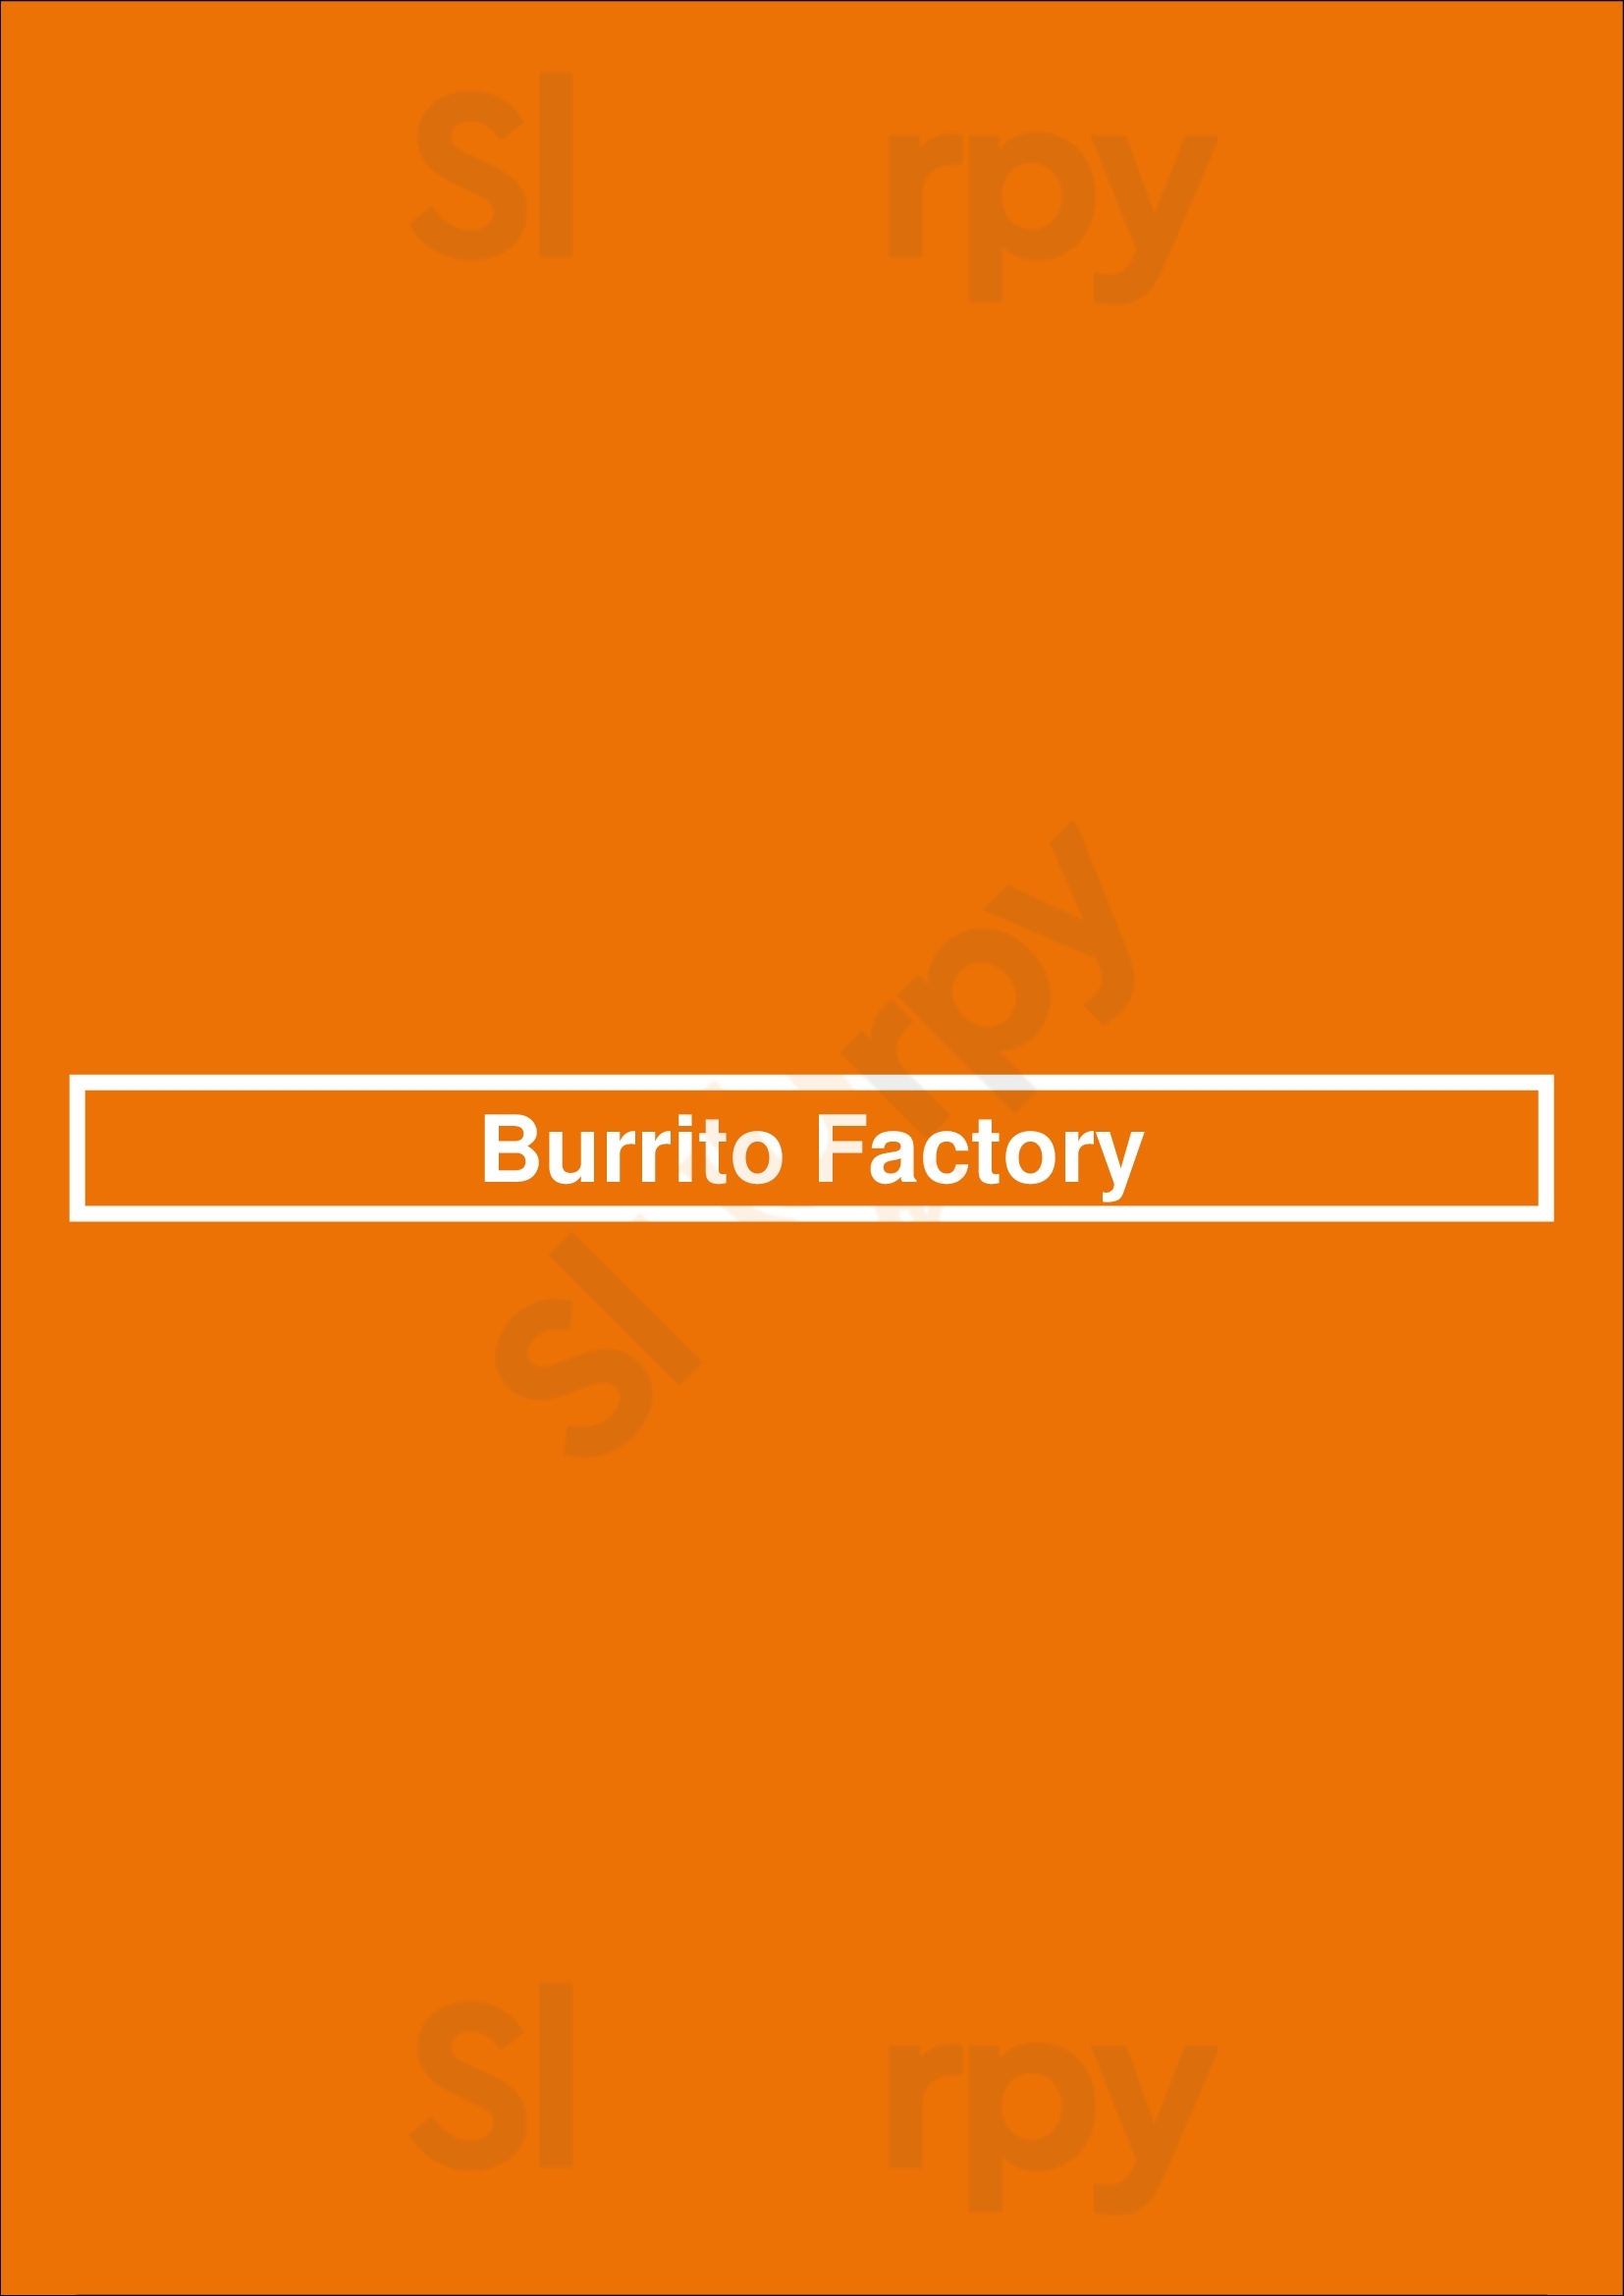 Burrito Factory San Jose Menu - 1